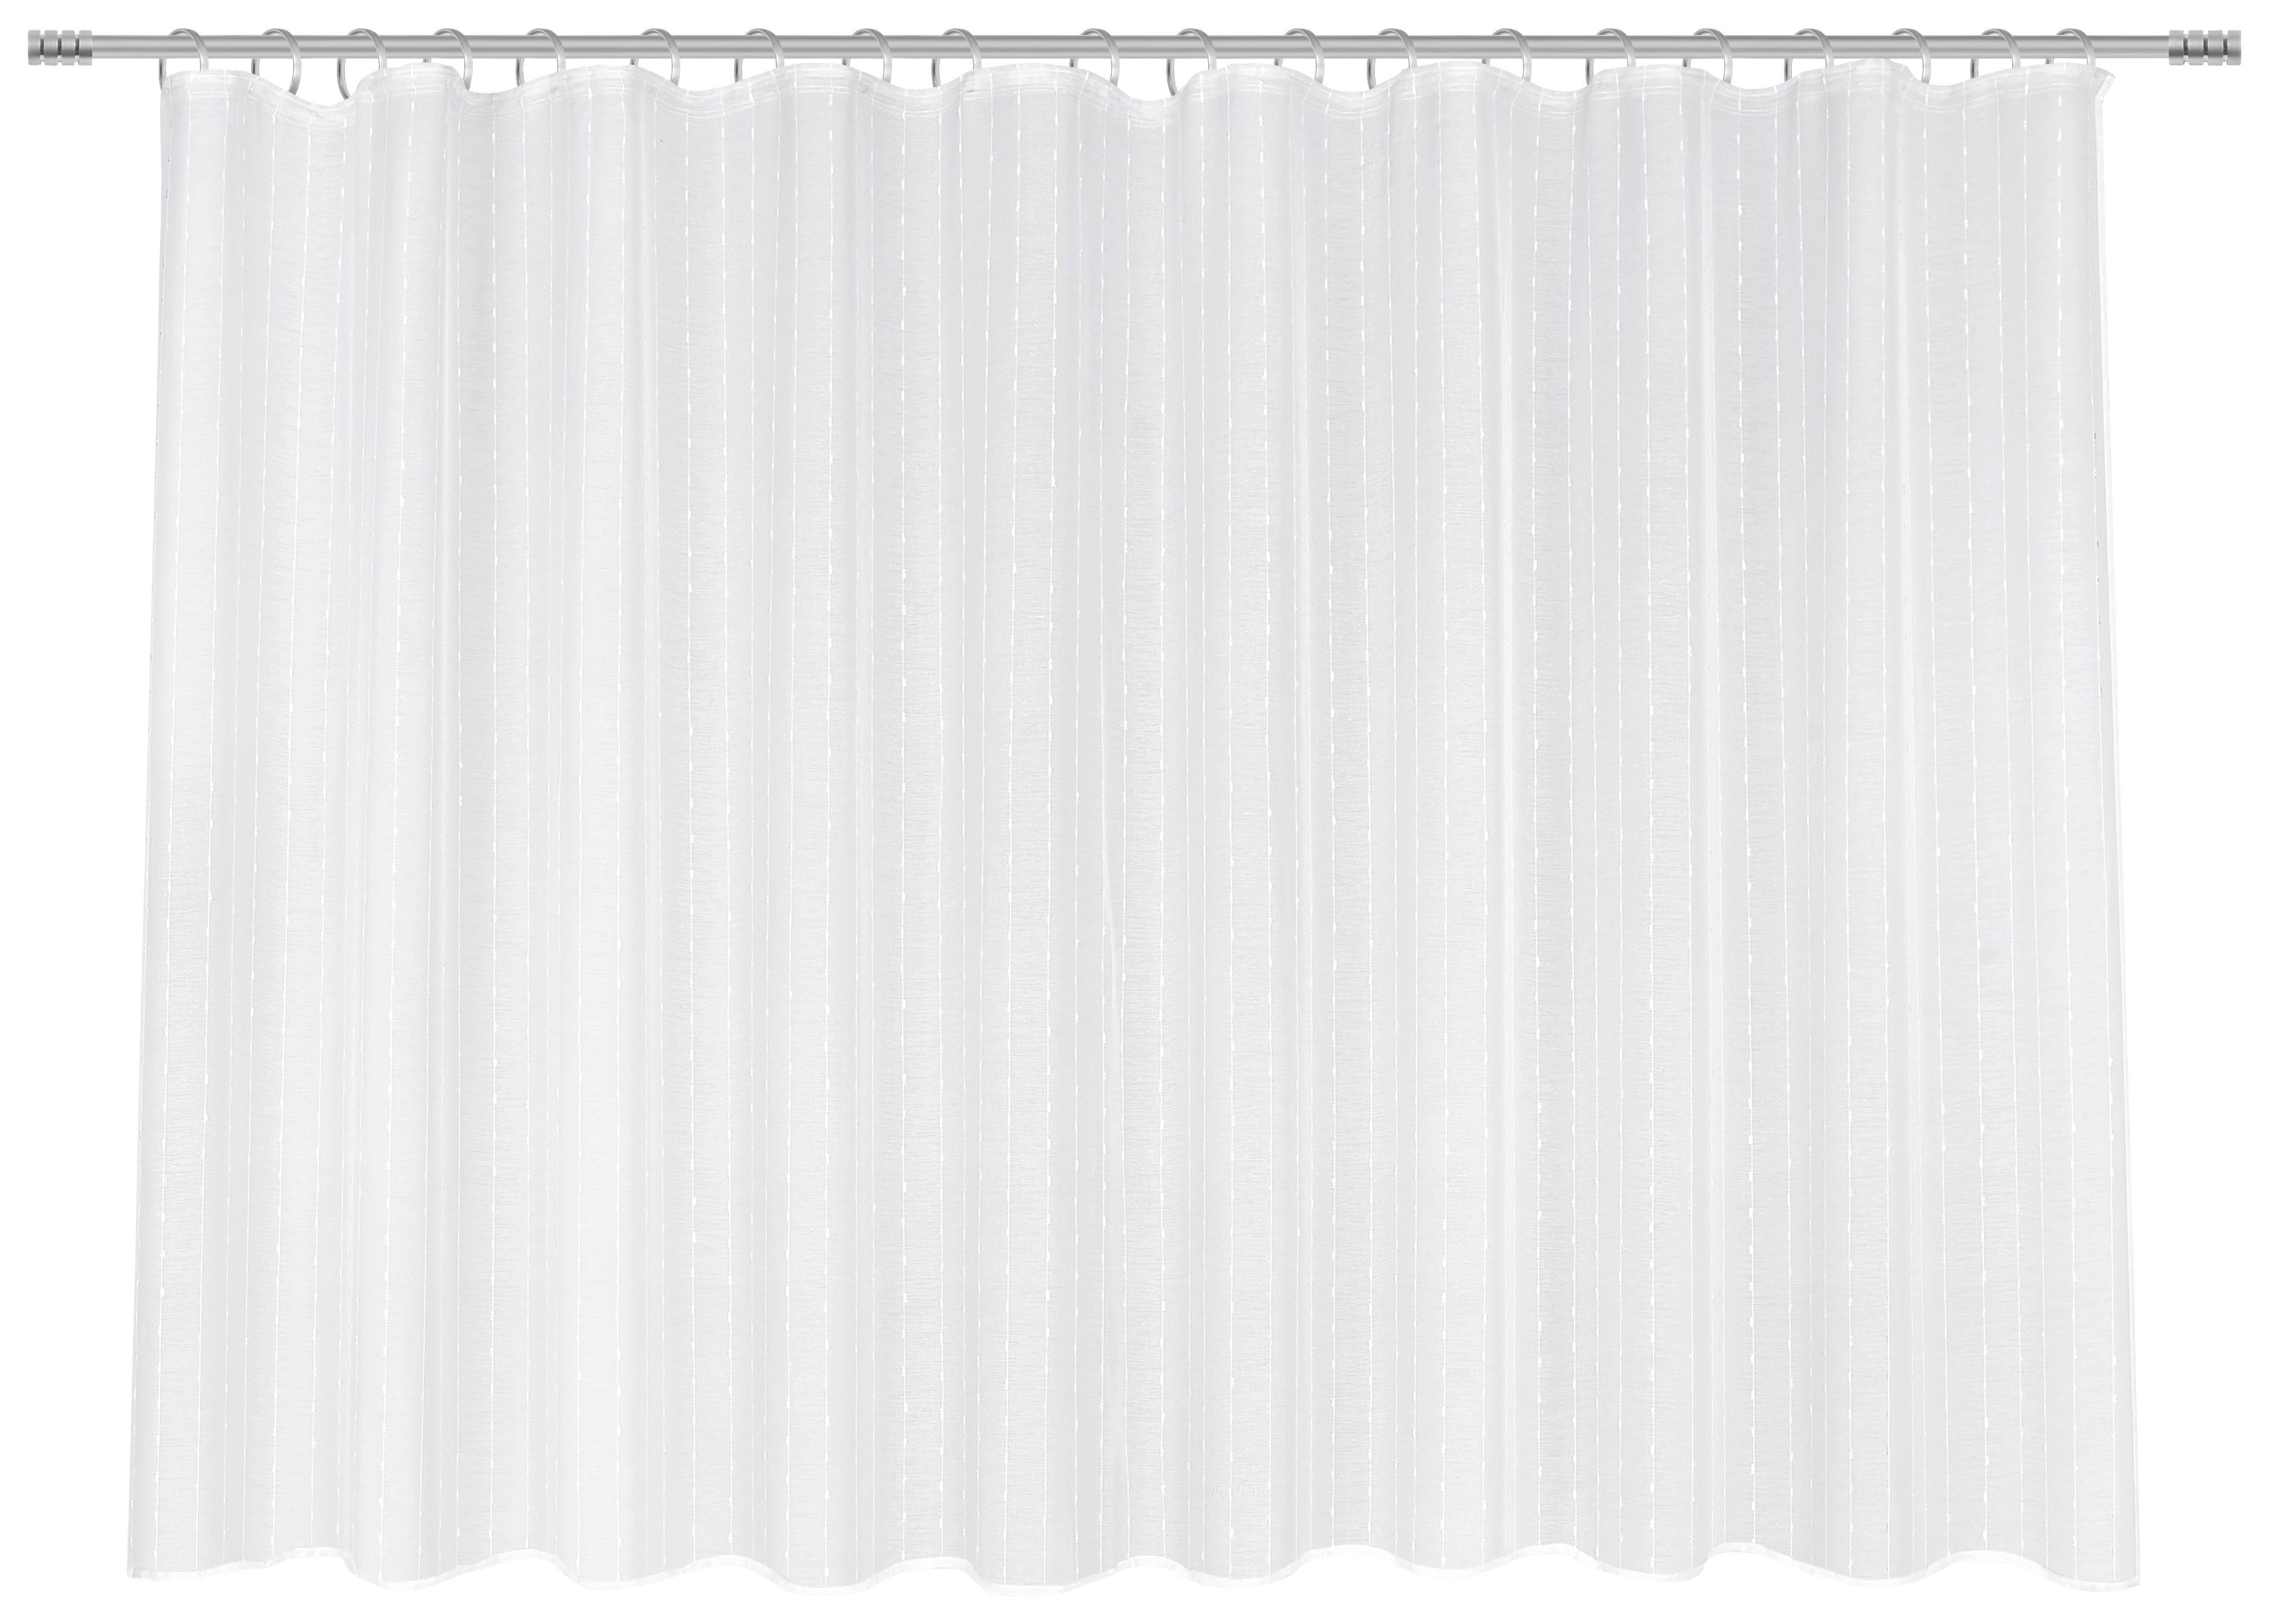 Kusová Záclona Lisa Store 1, 300/140cm - bílá, Romantický / Rustikální, textil (300/145cm) - Modern Living